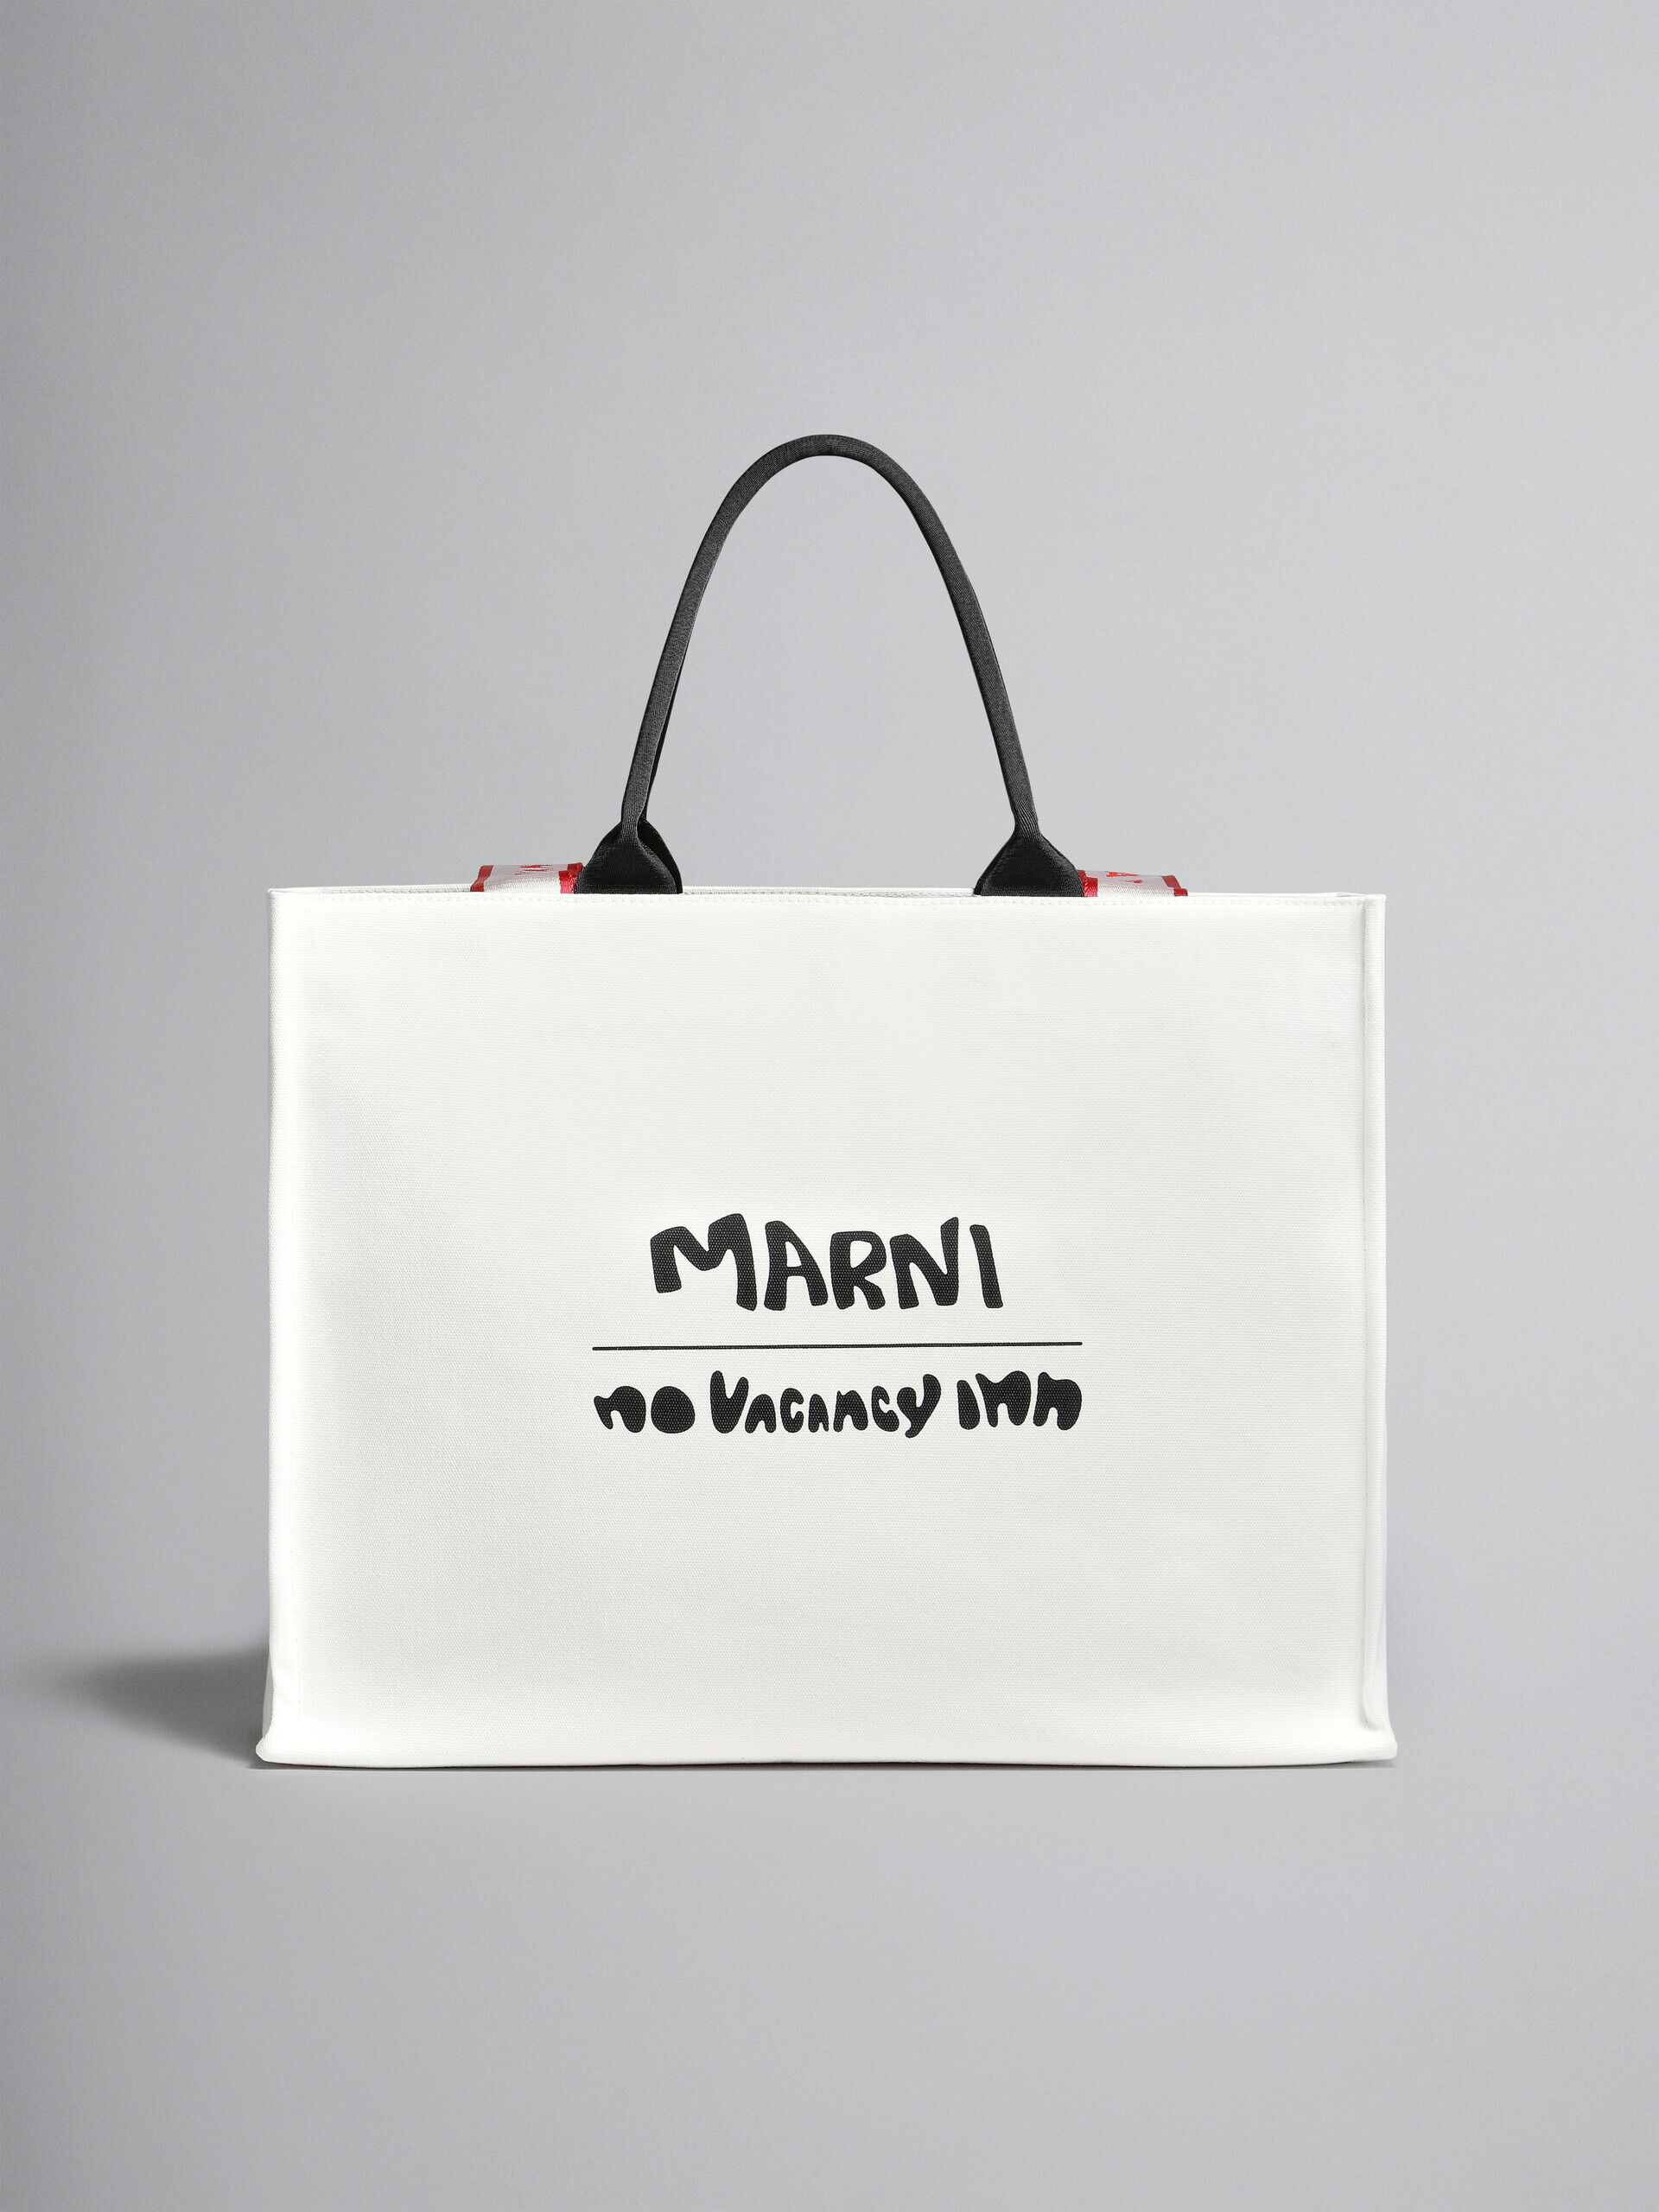 Marni x No Vacancy Inn - ホワイトキャンバス製 Beyトートバッグ | Marni